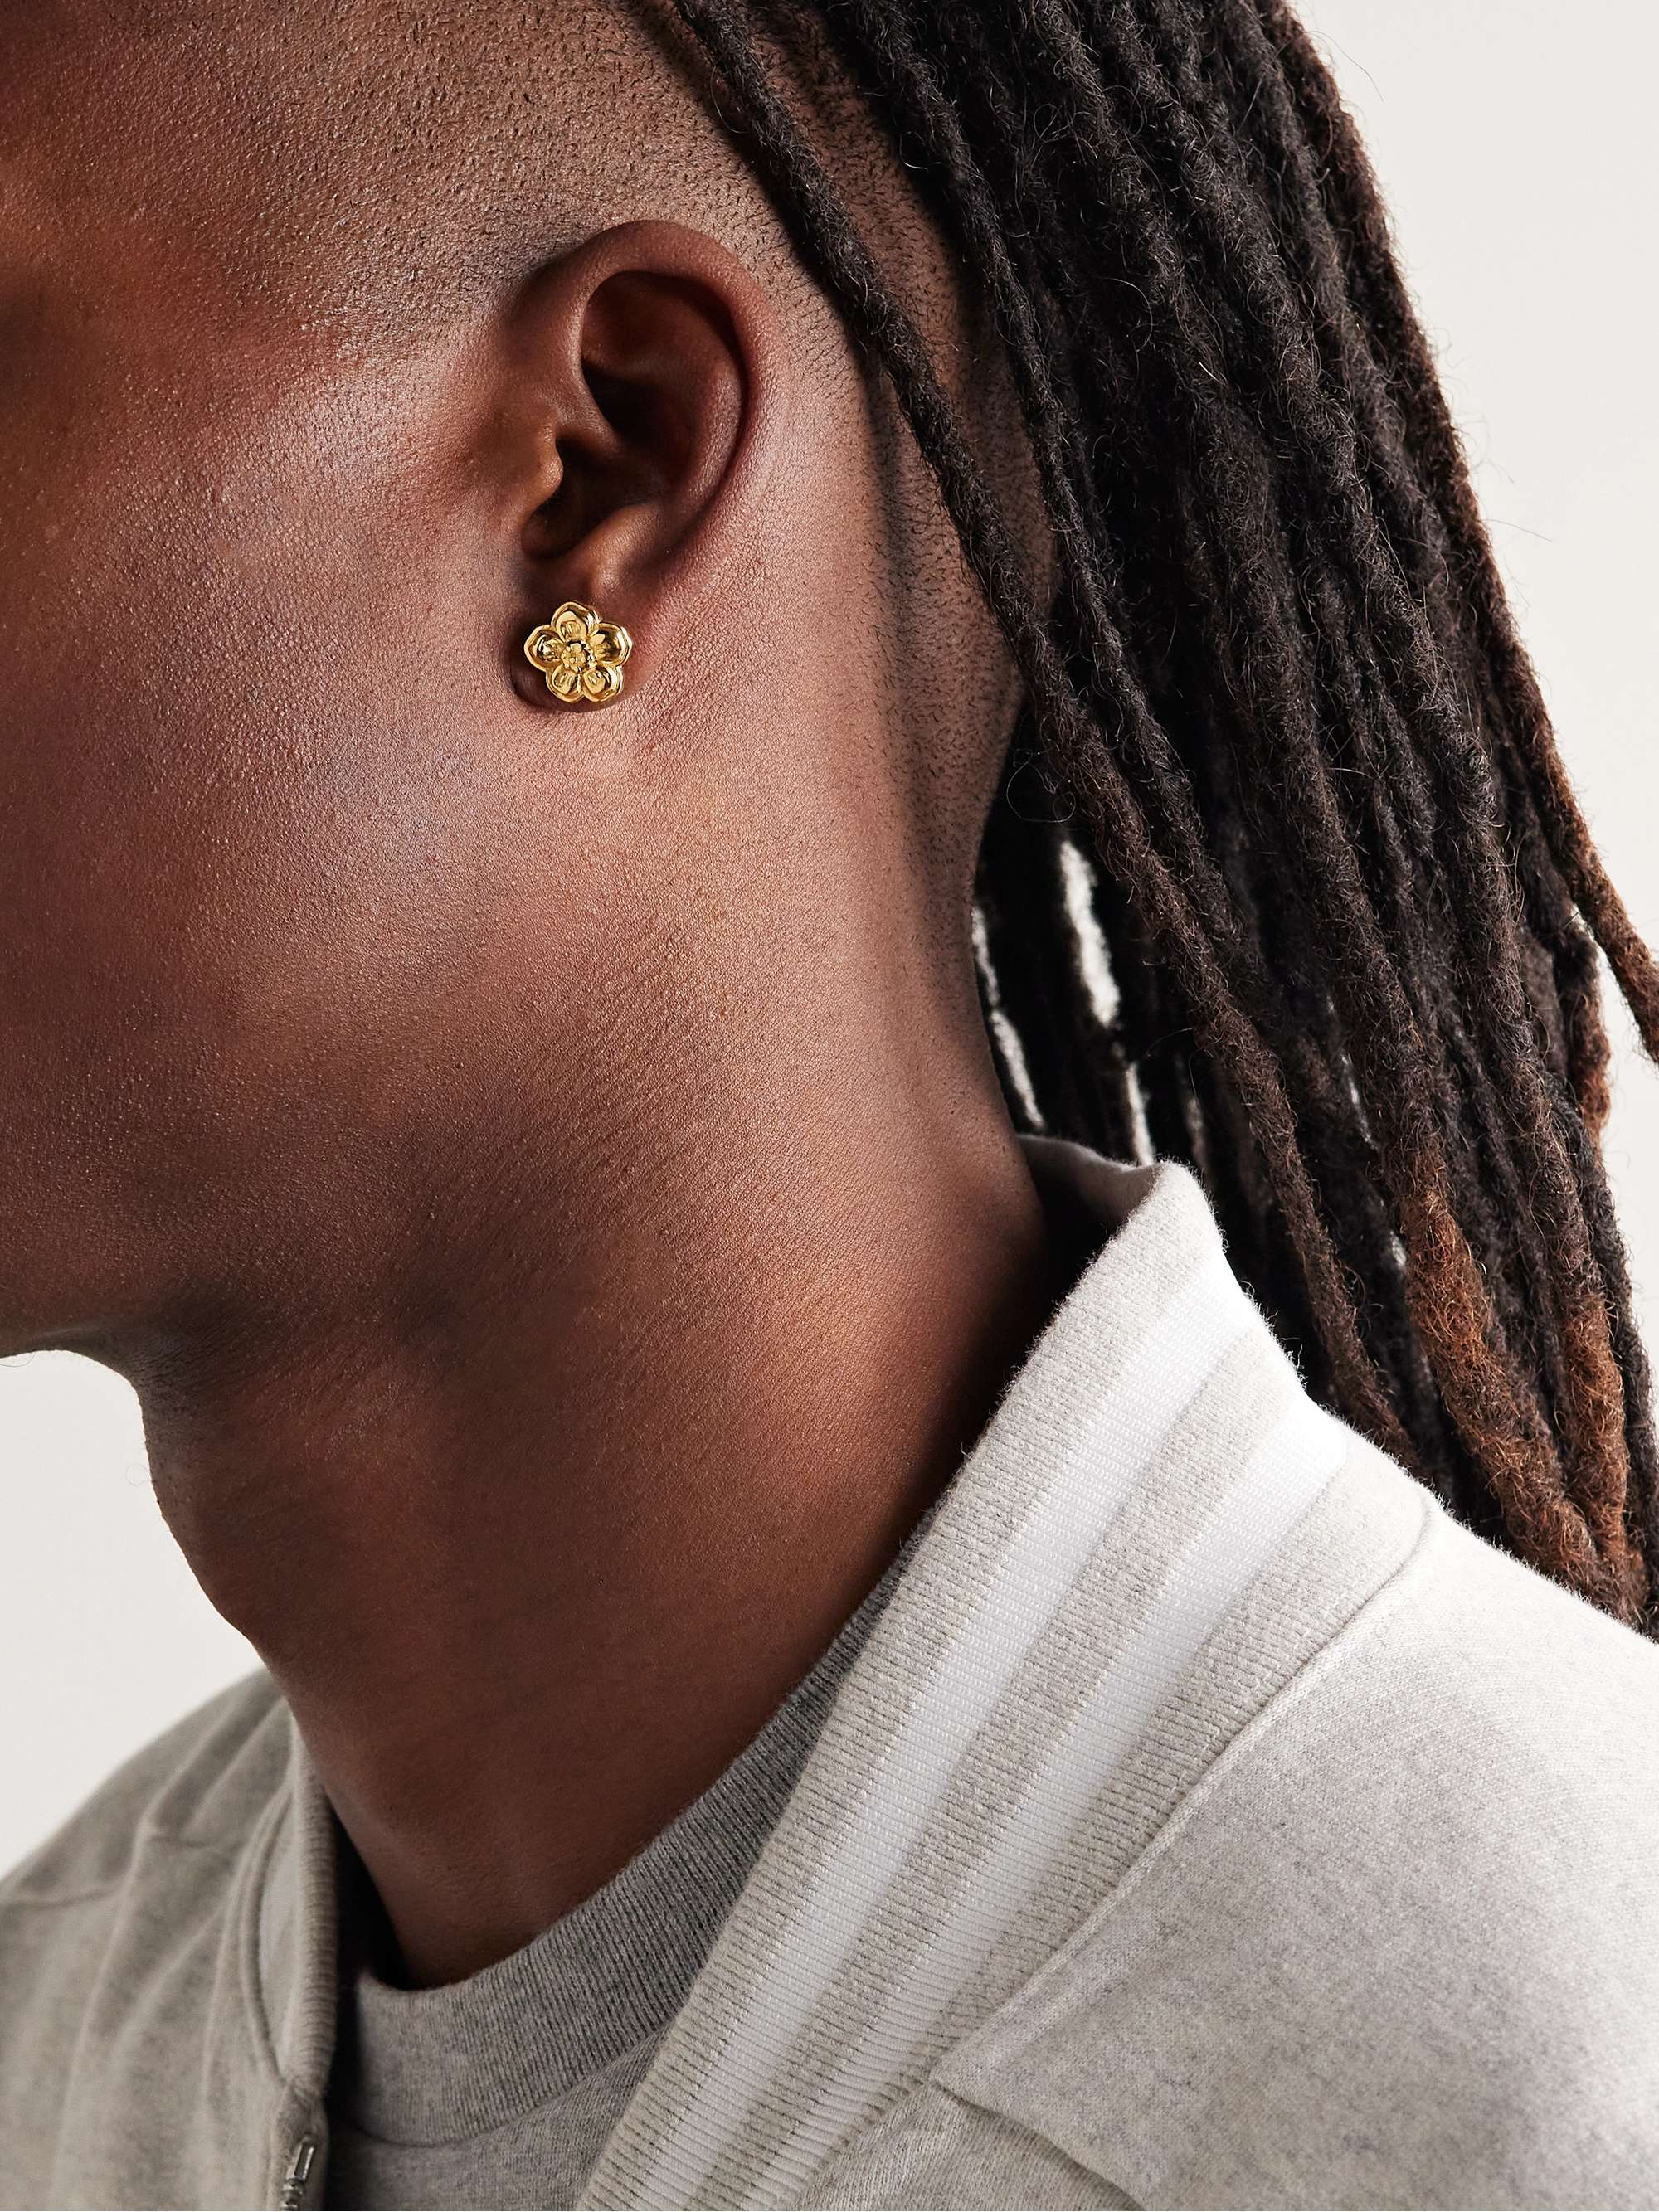 KENZO Boke Flower Gold-Tone Earrings for Men | MR PORTER